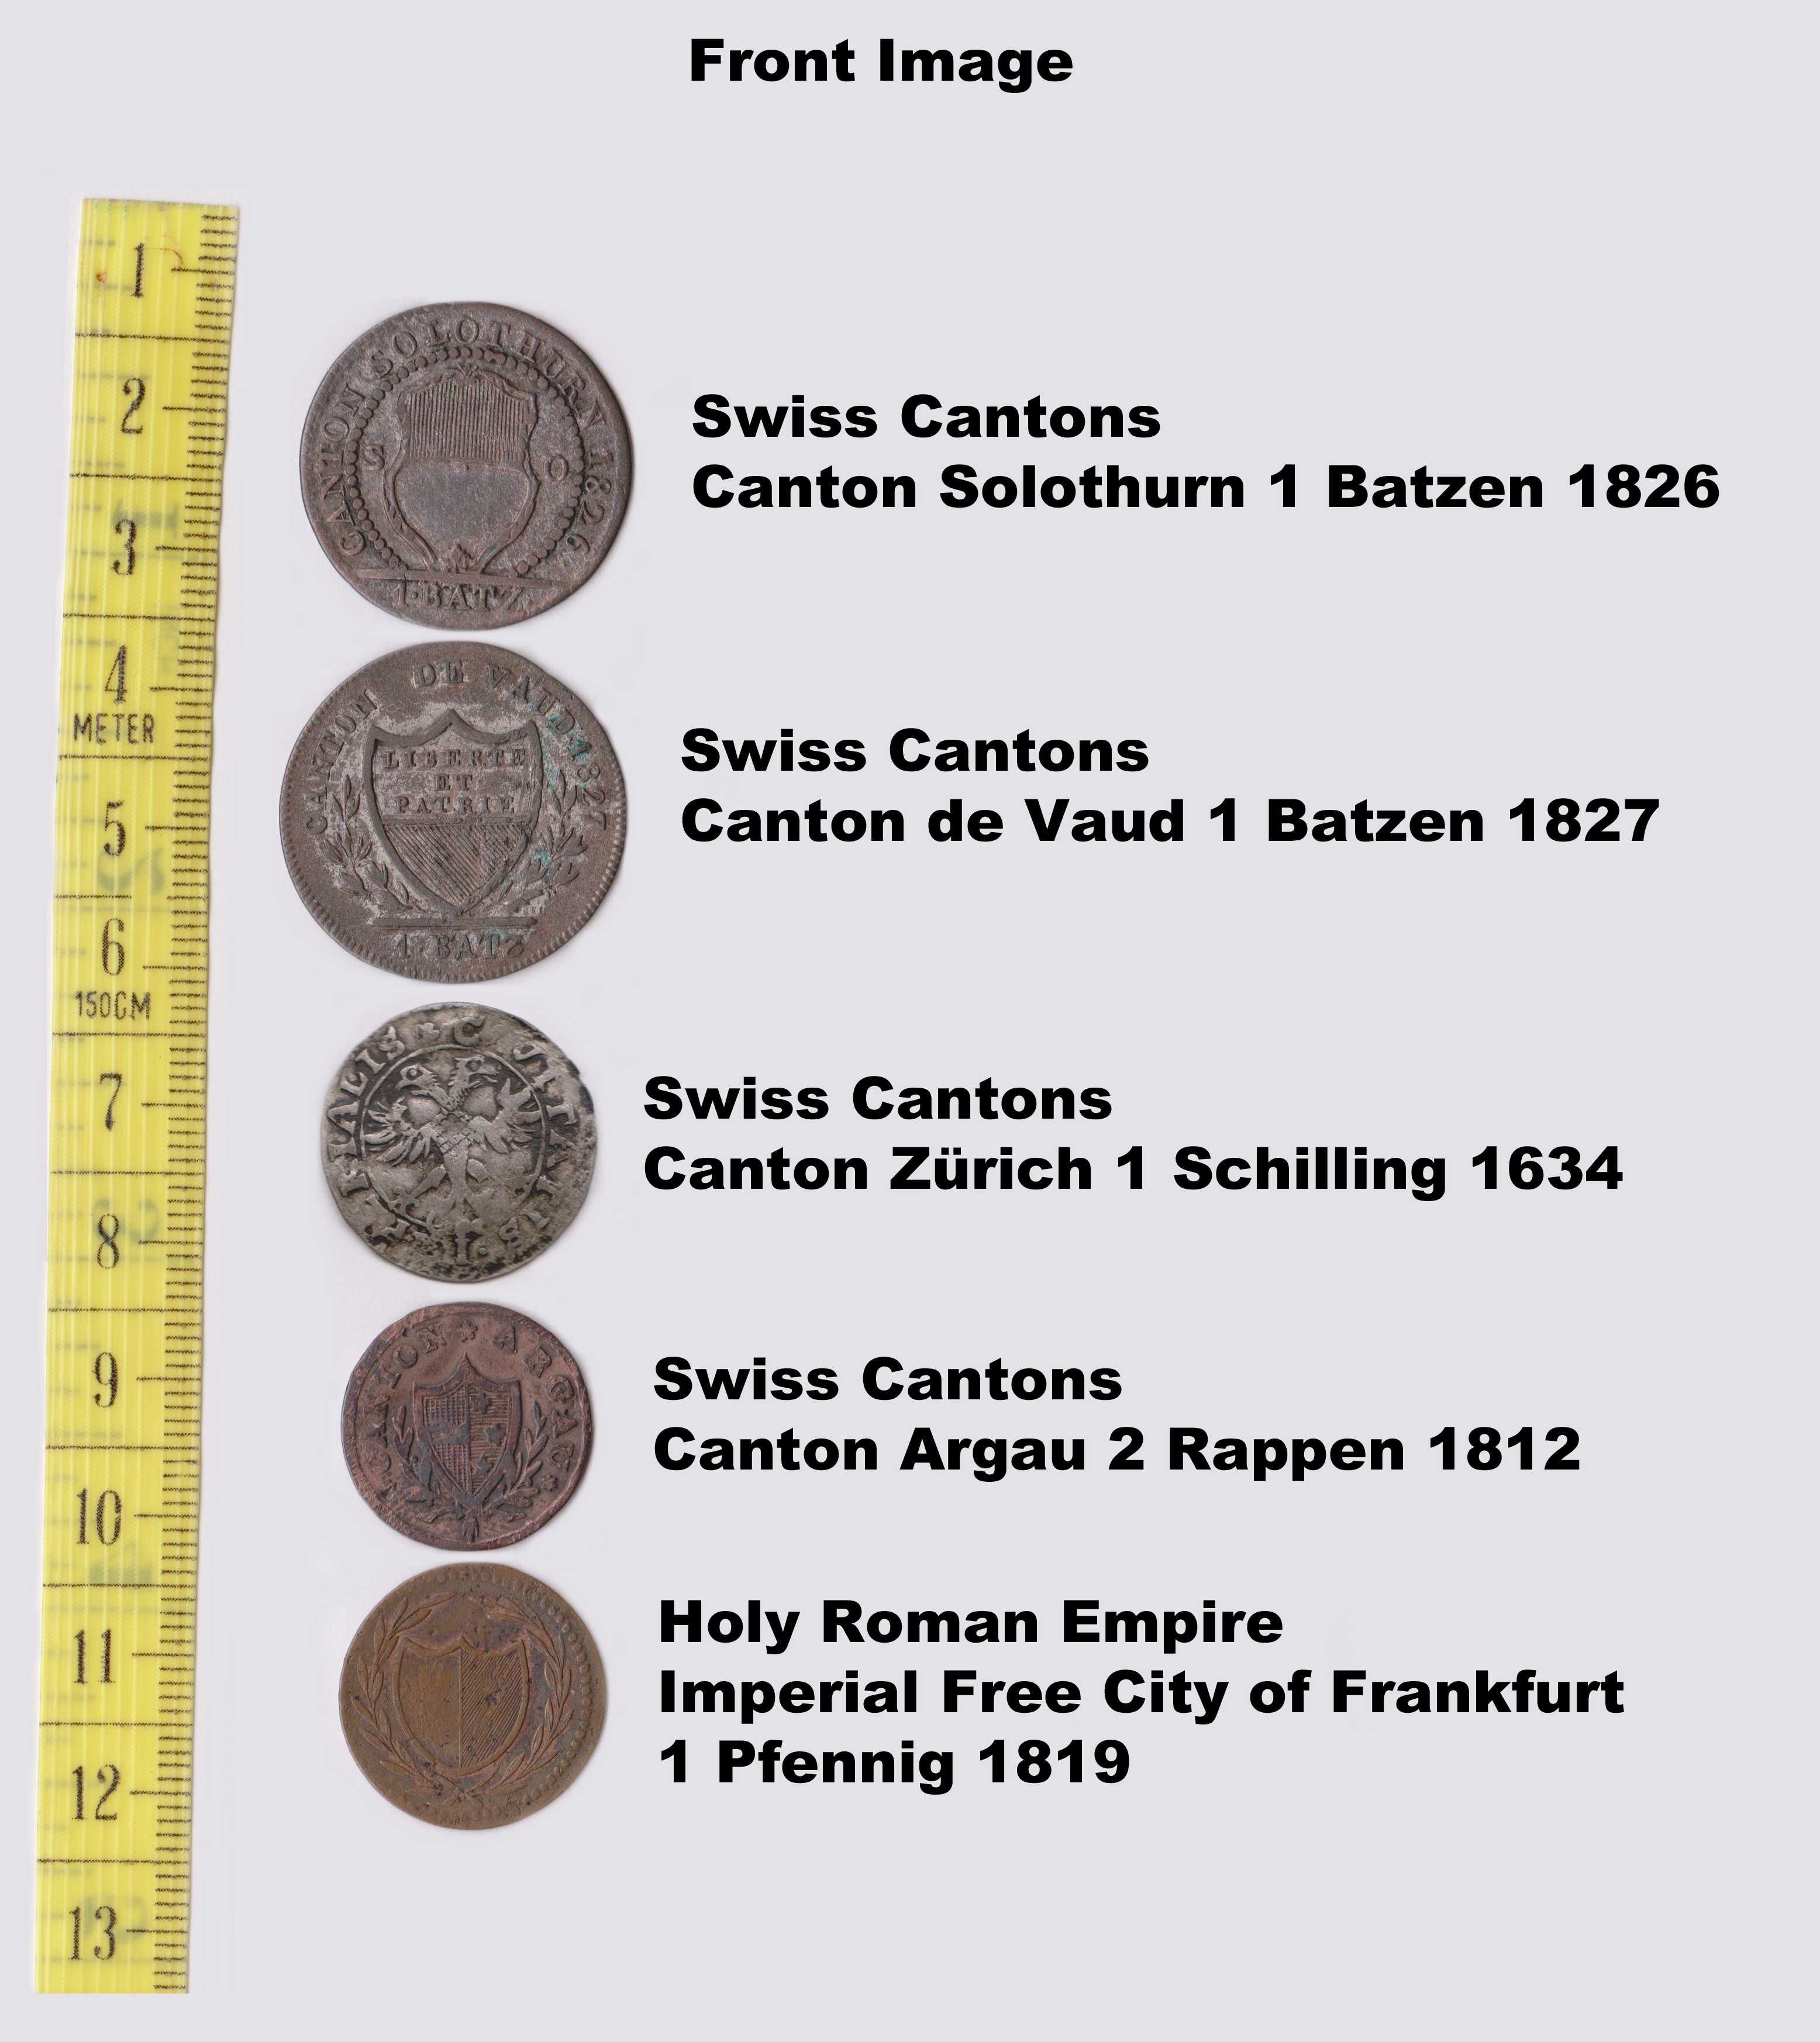 Moedas Raras Cantões Suíços e Sacro Imperio Romano (1634.1826)